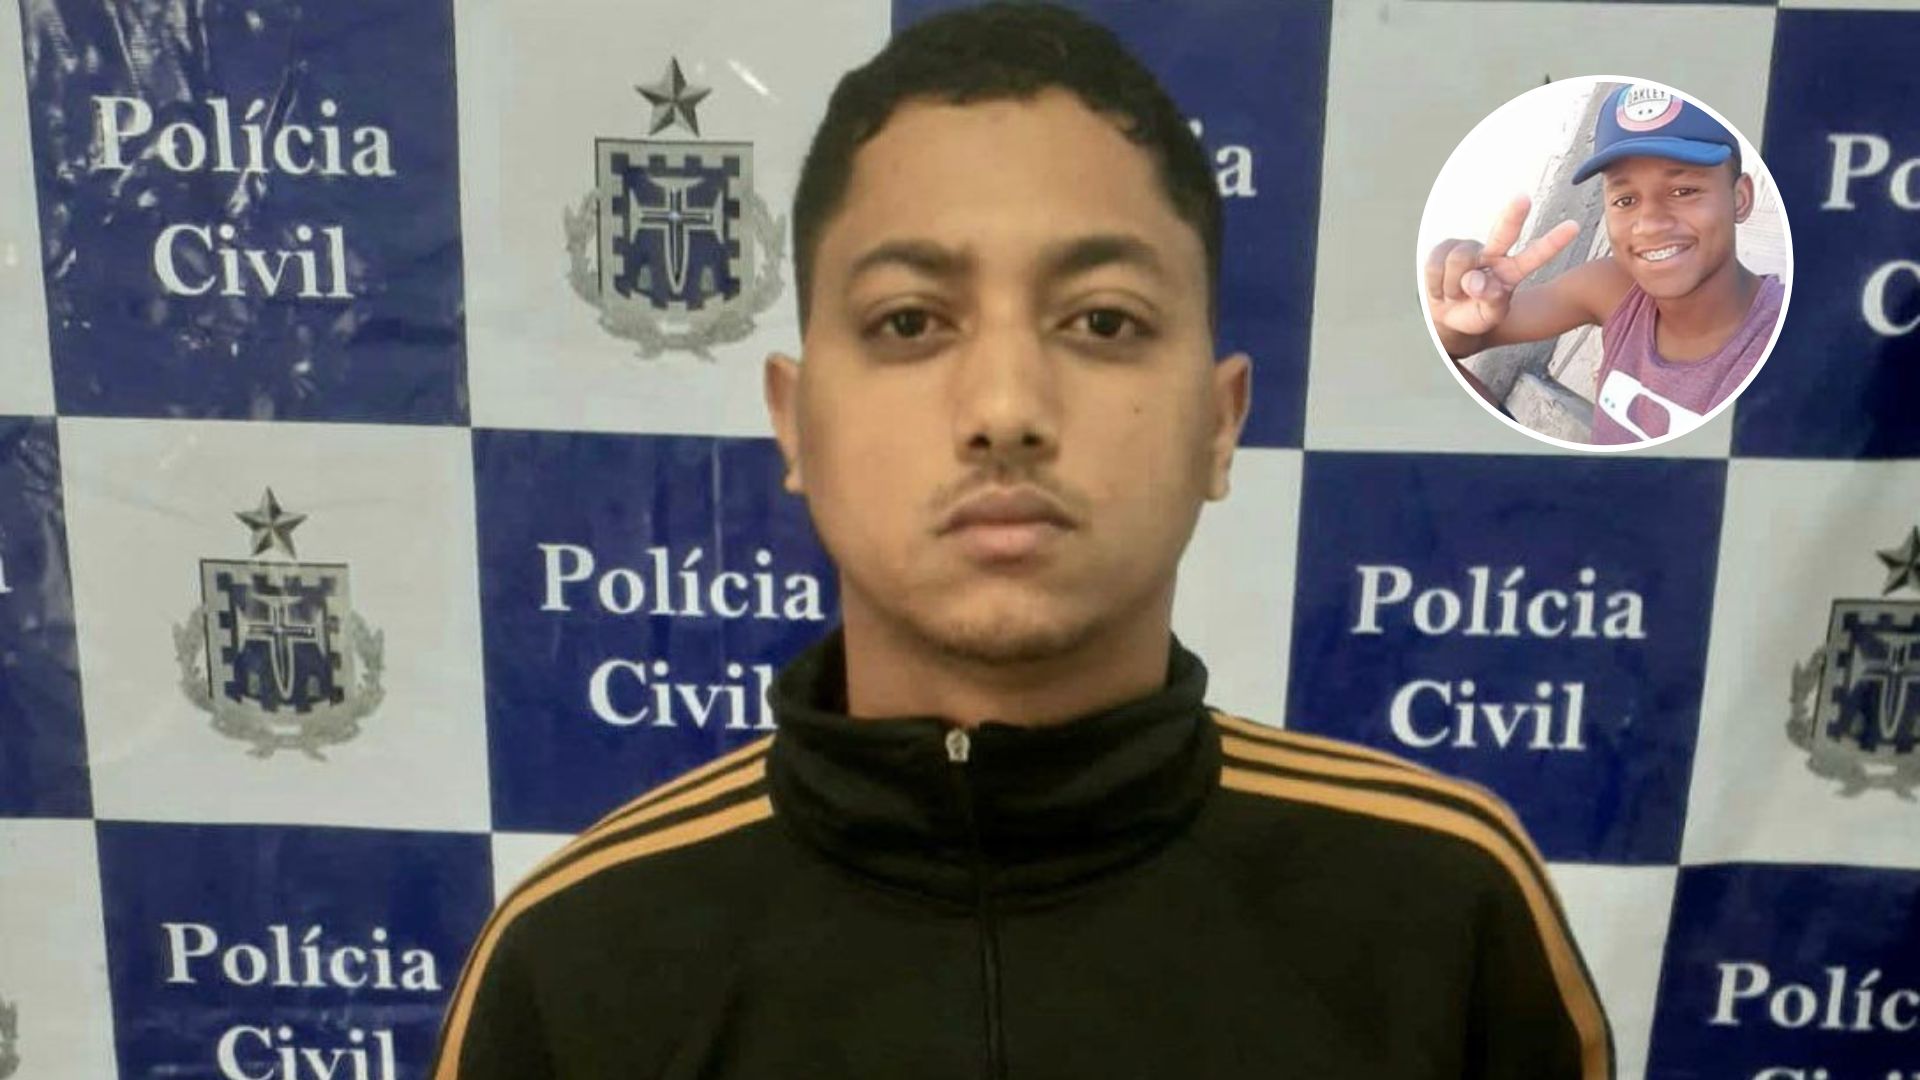 Polícia baiana deteve o homem enquanto ele tentava obter uma prótese mecânica, no município de Caravelas. Roberto Ferreira Nascimento morreu em 2019, após testemunhar um assassinato